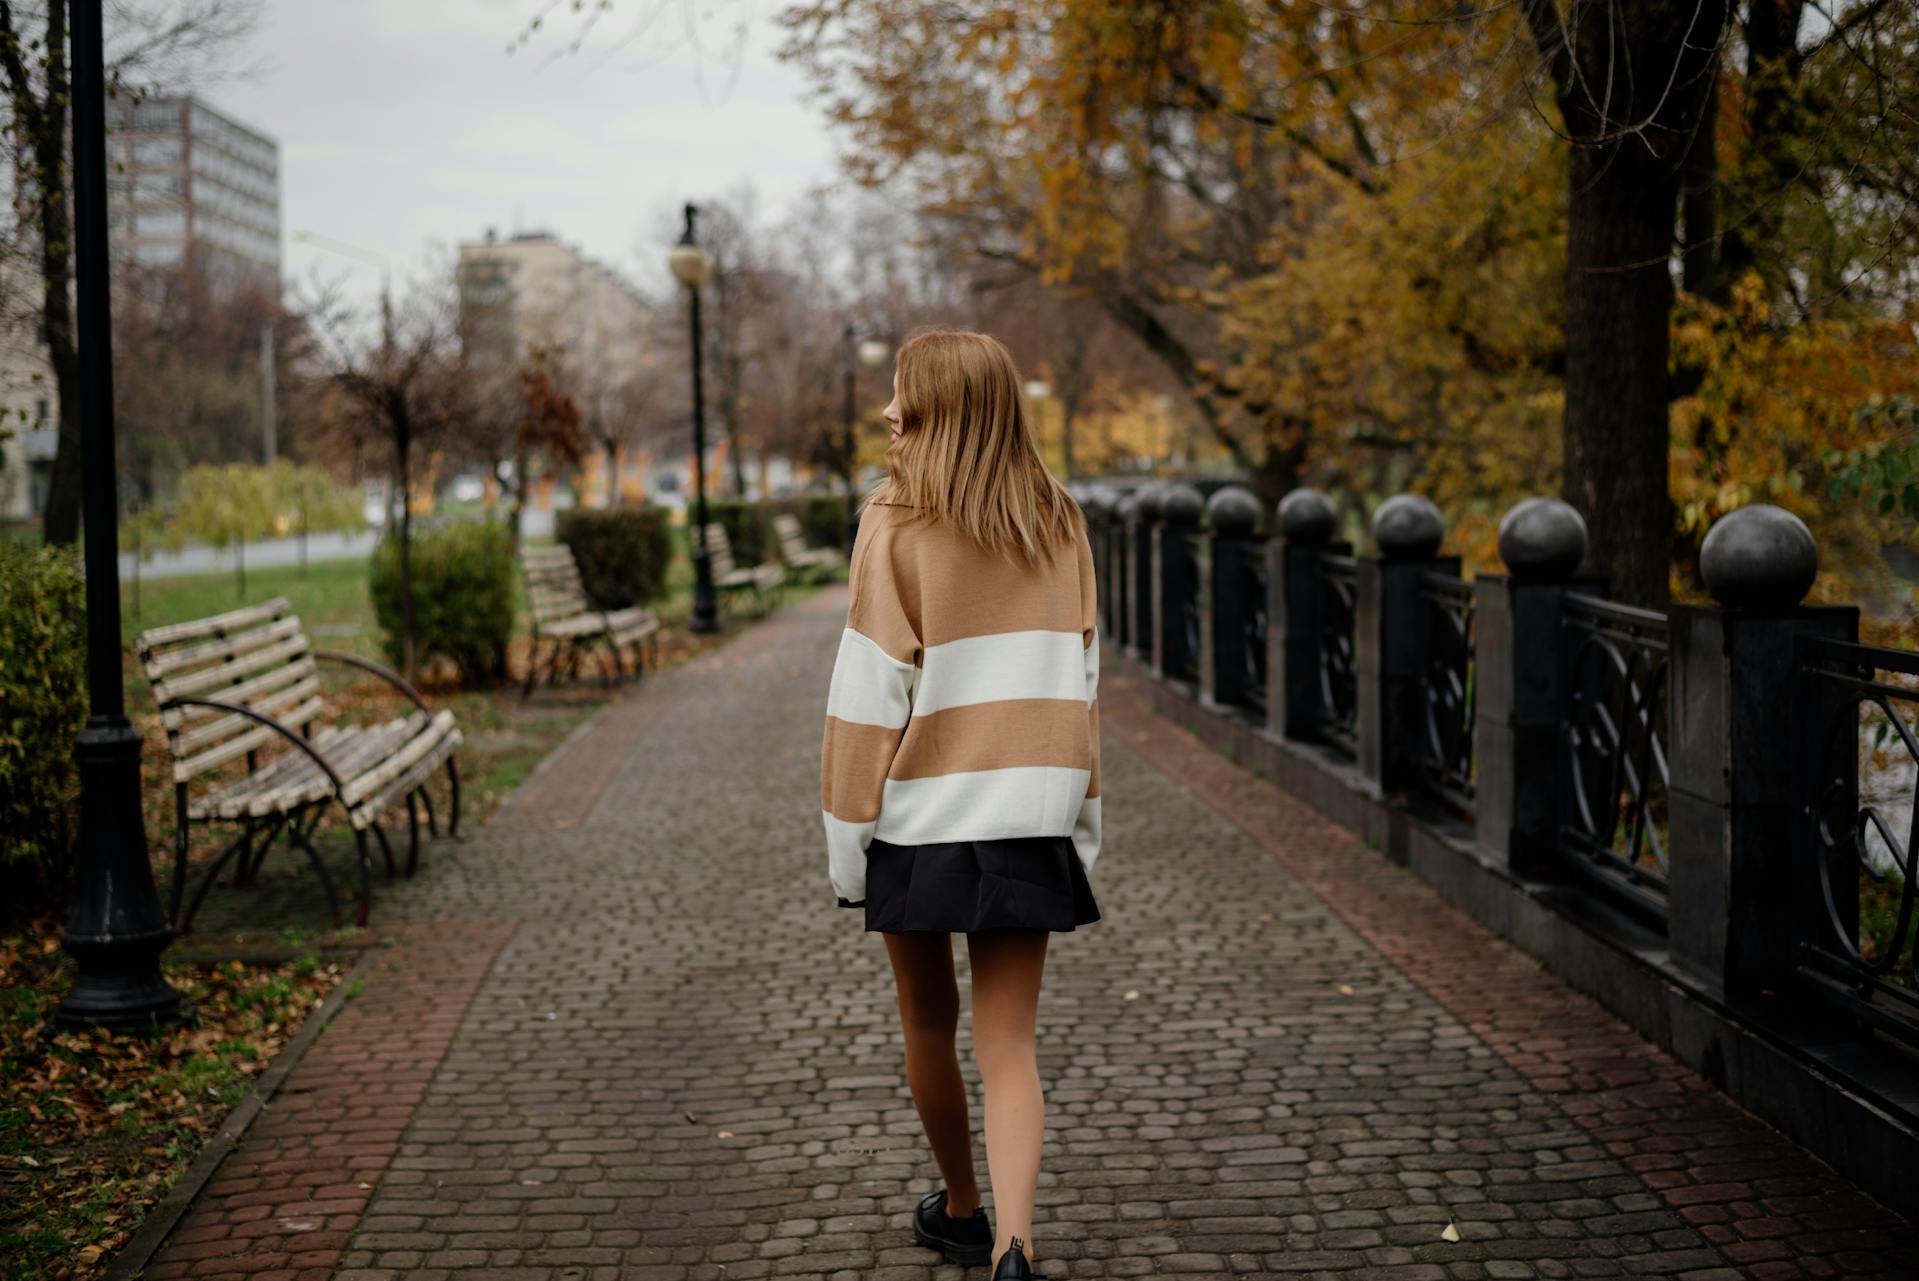 Une femme marchant seule dans un parc | Source : Pexels